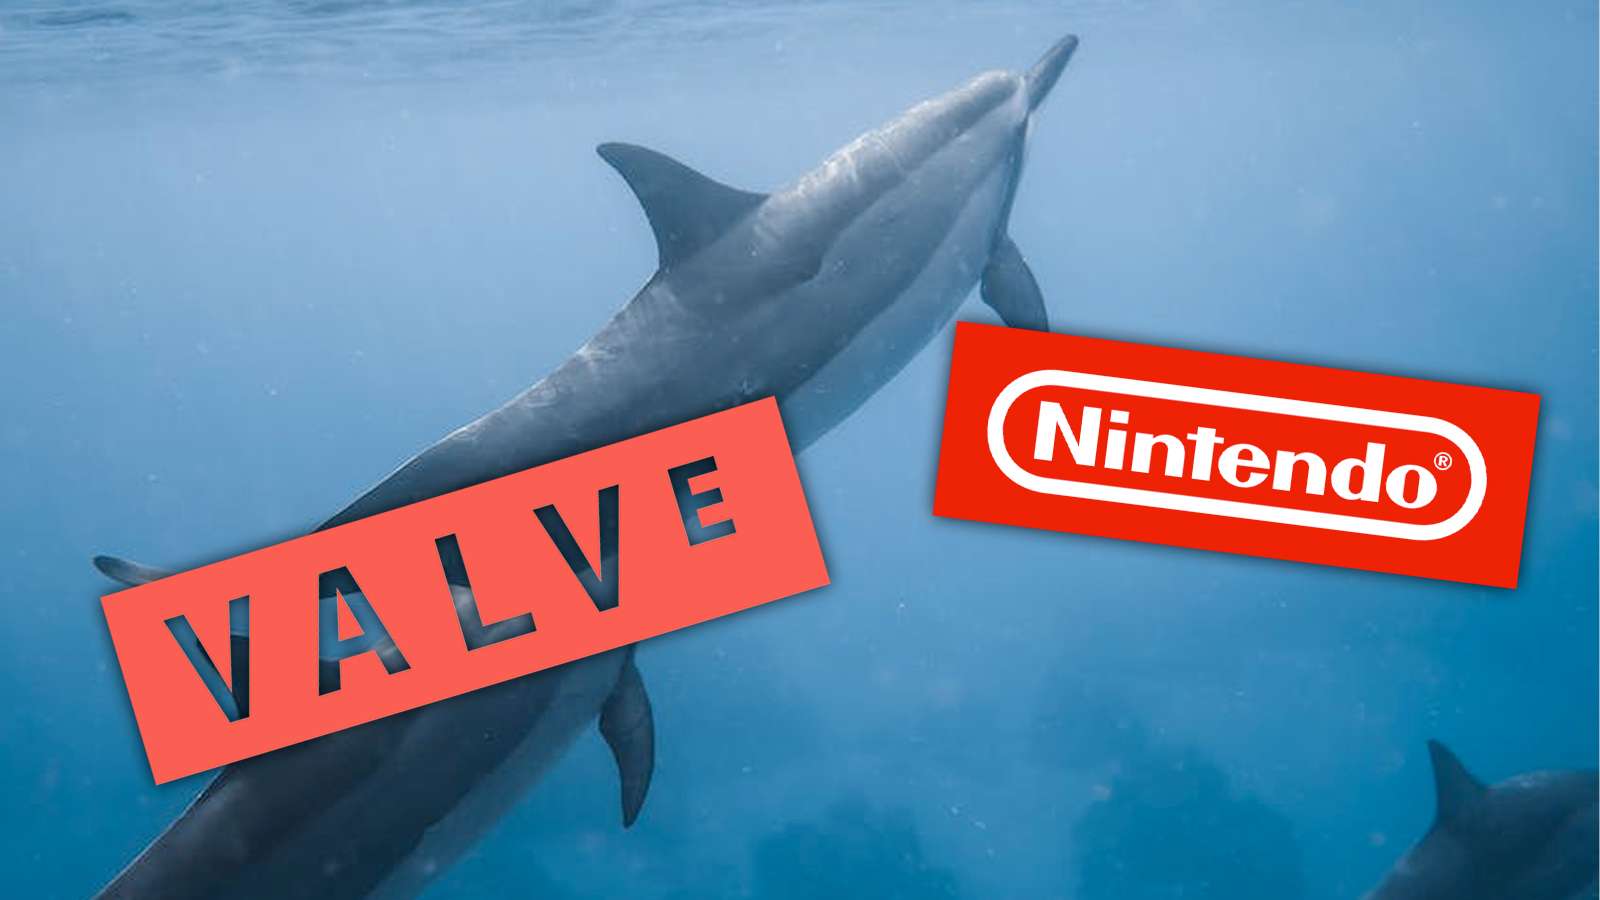 Valve Nintendo logos and a Dolphin